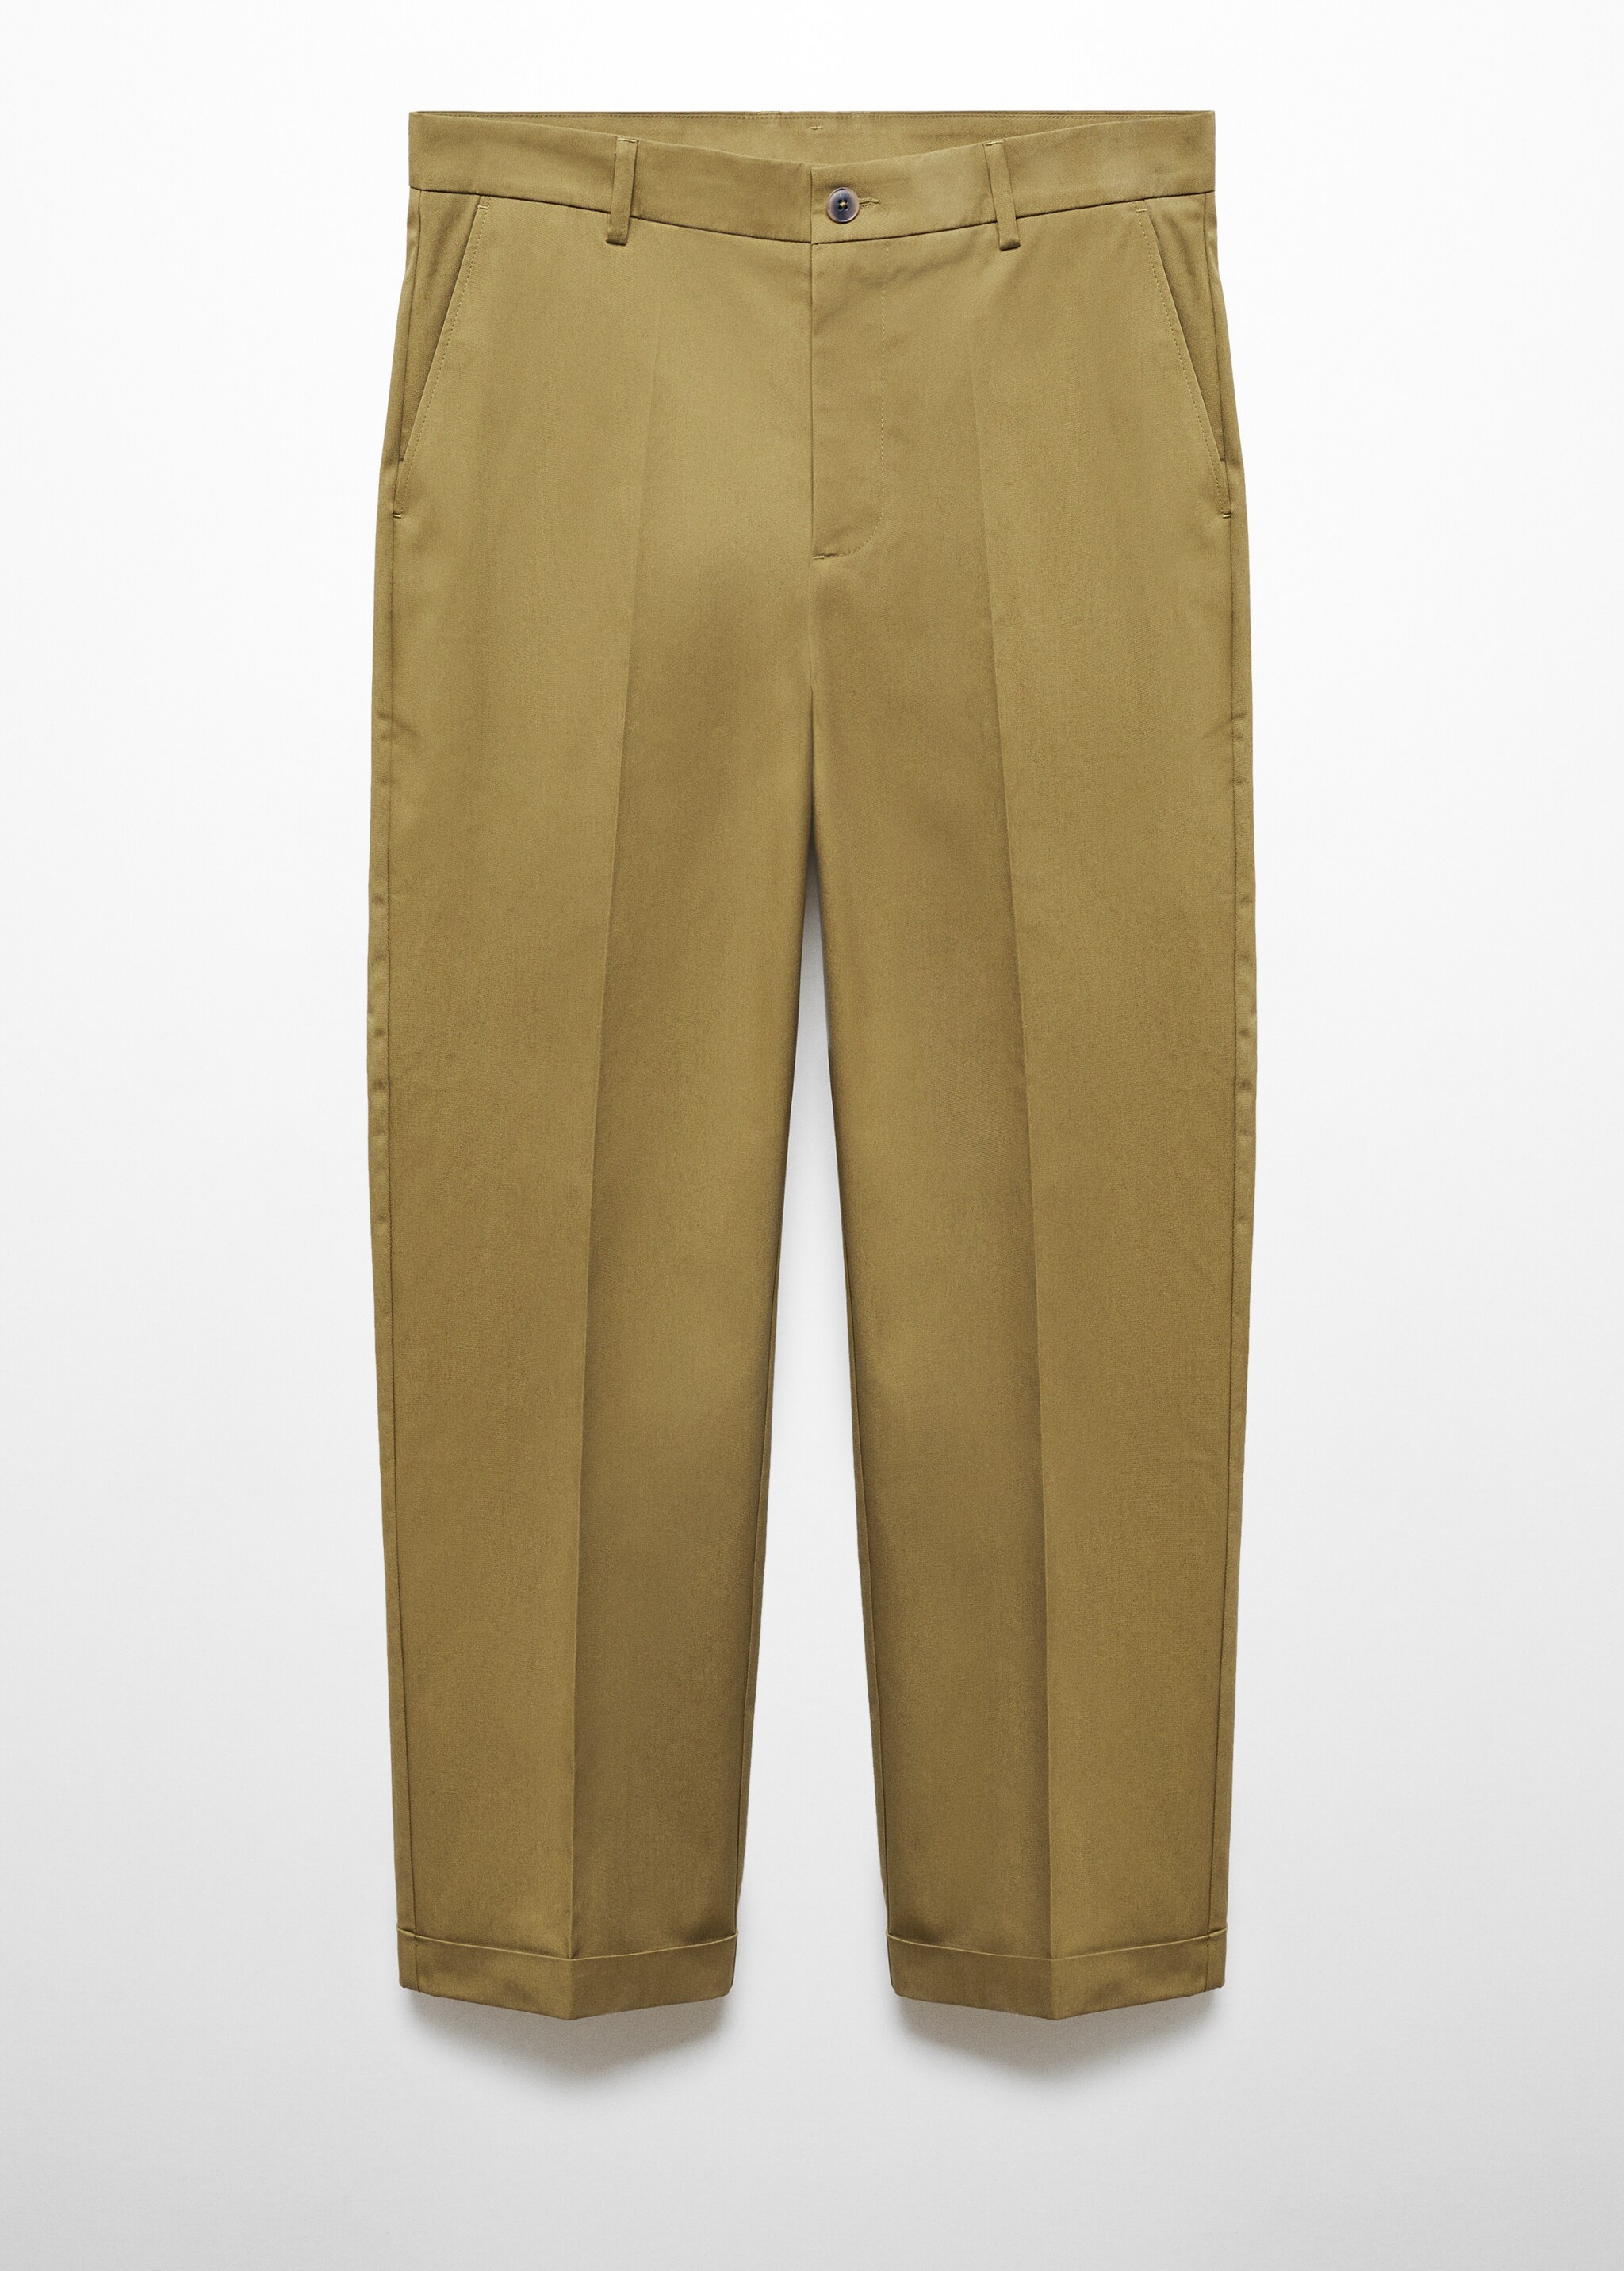 Pantalon coton straight-fit revers - Article sans modèle